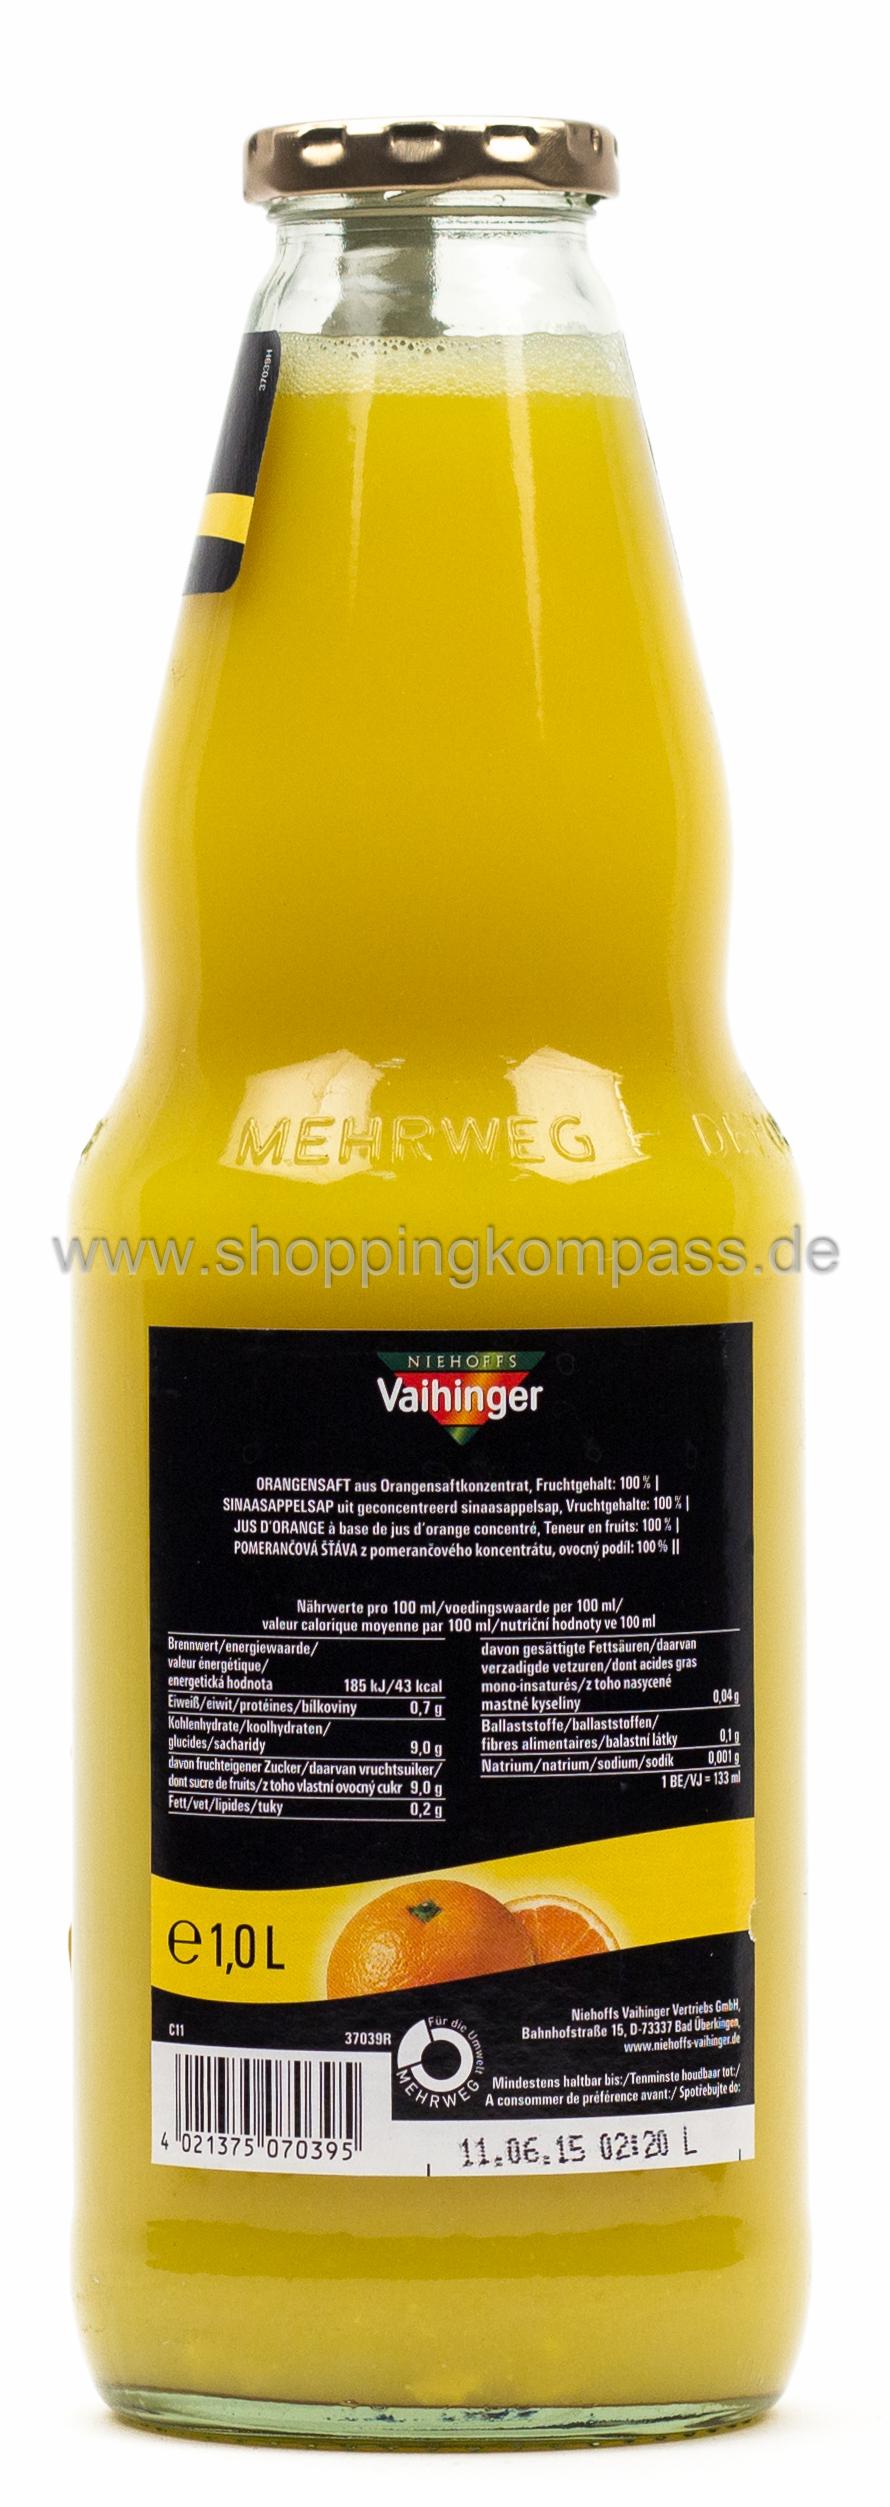 Niehoffs Vaihinger Orangensaft Kasten 6 x 1 l Glas Mehrweg